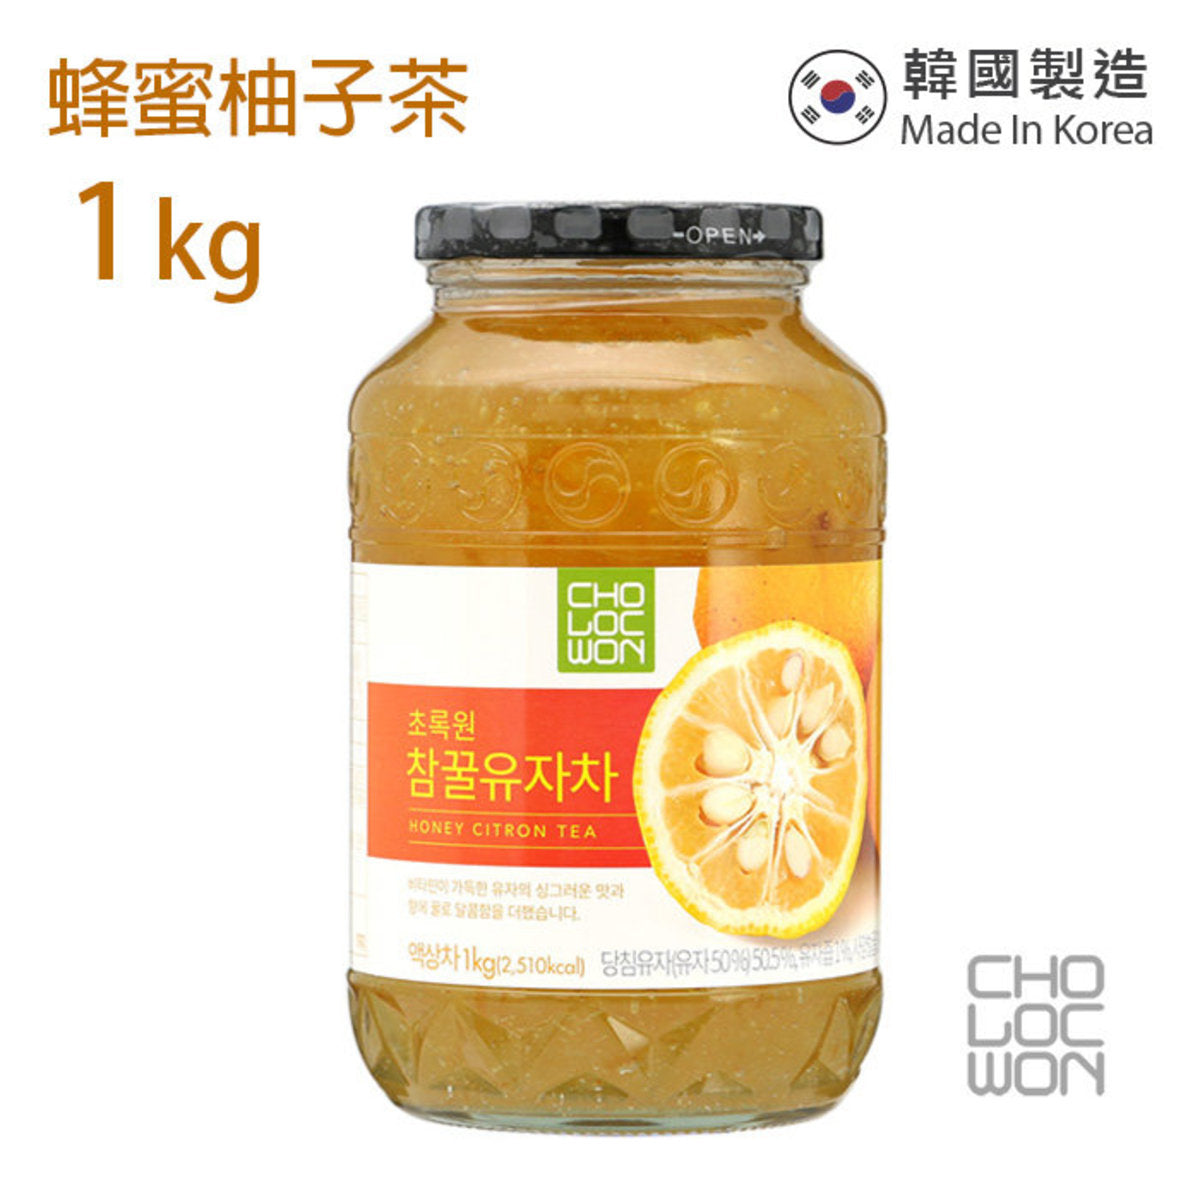 草綠園 - 韓國蜂蜜柚子茶 Korean Honey Citron Tea 1kg